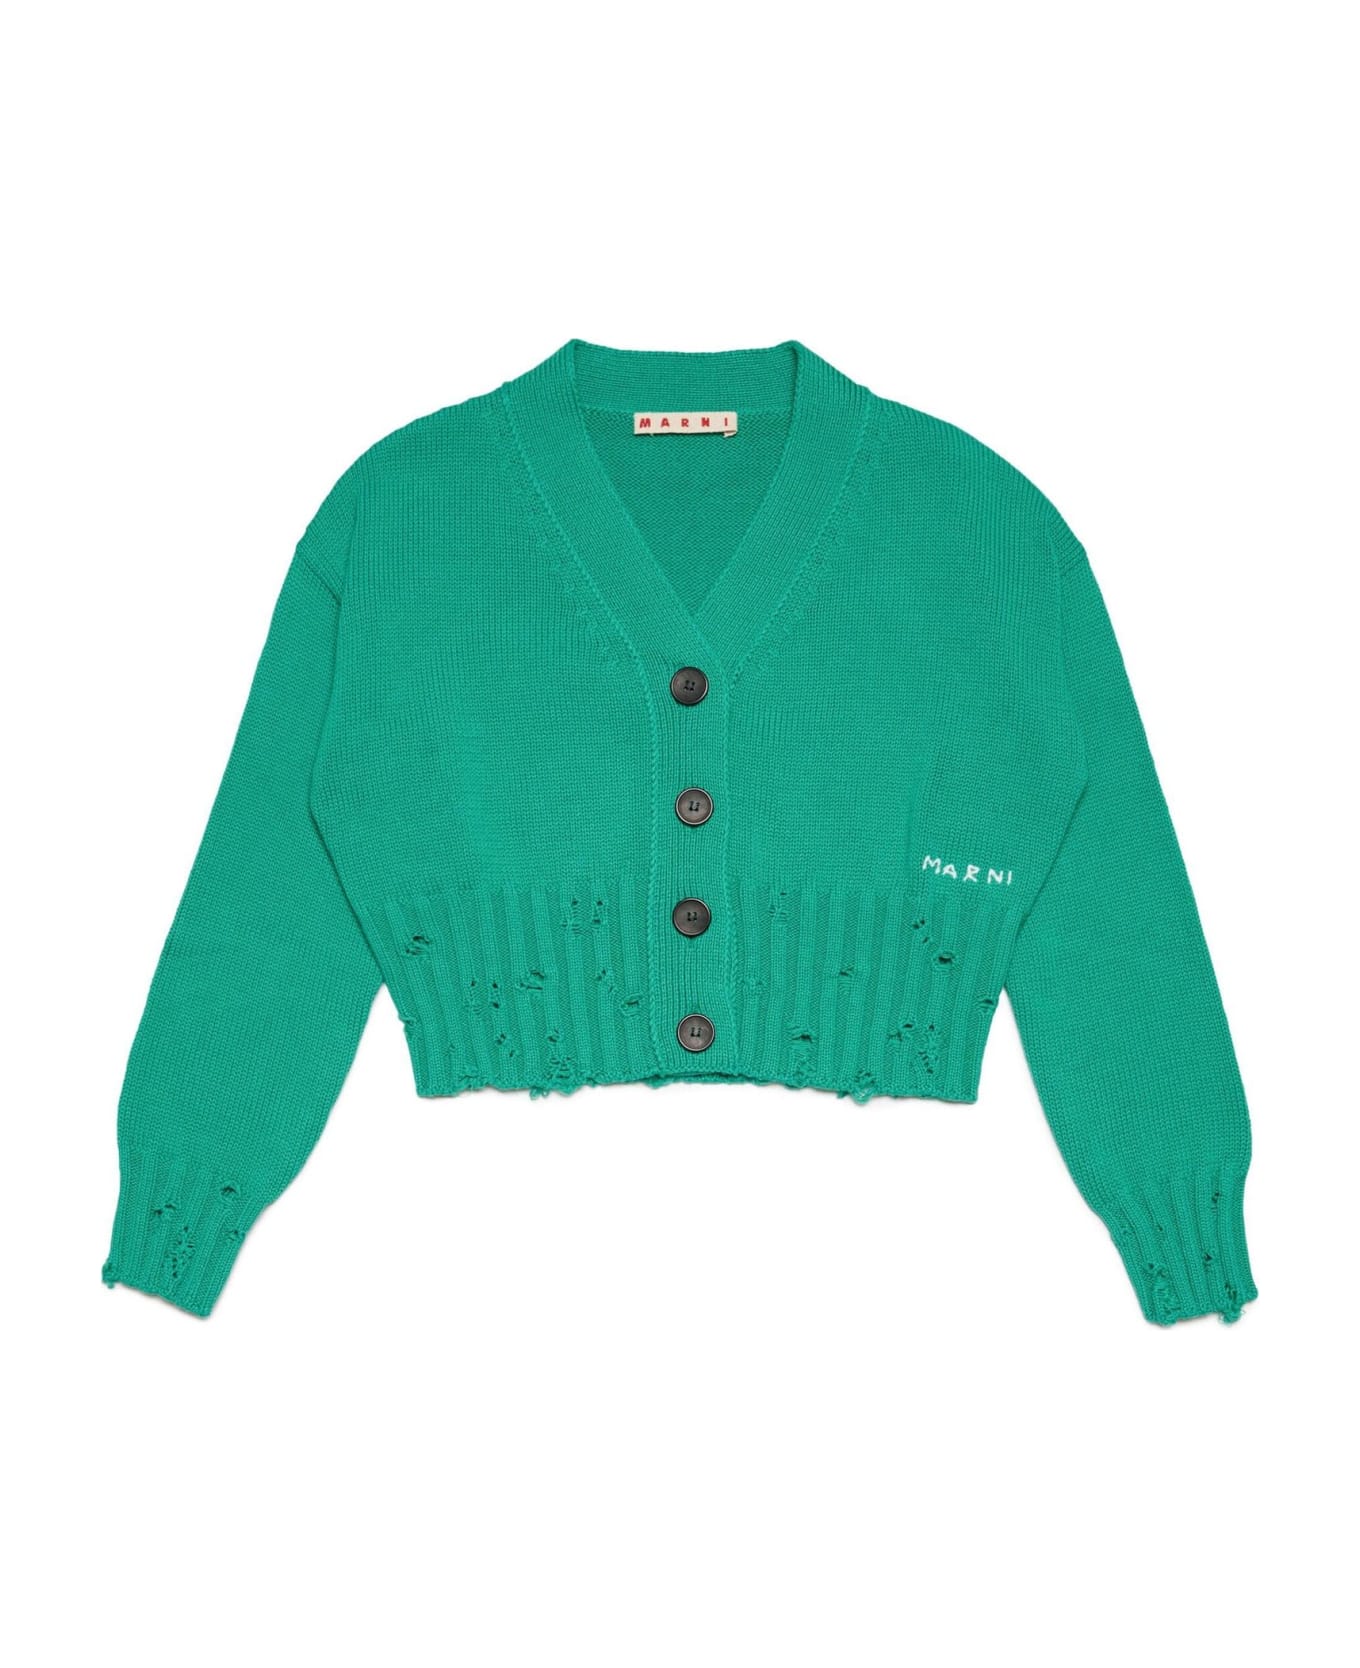 Marni Sweaters Green - Green